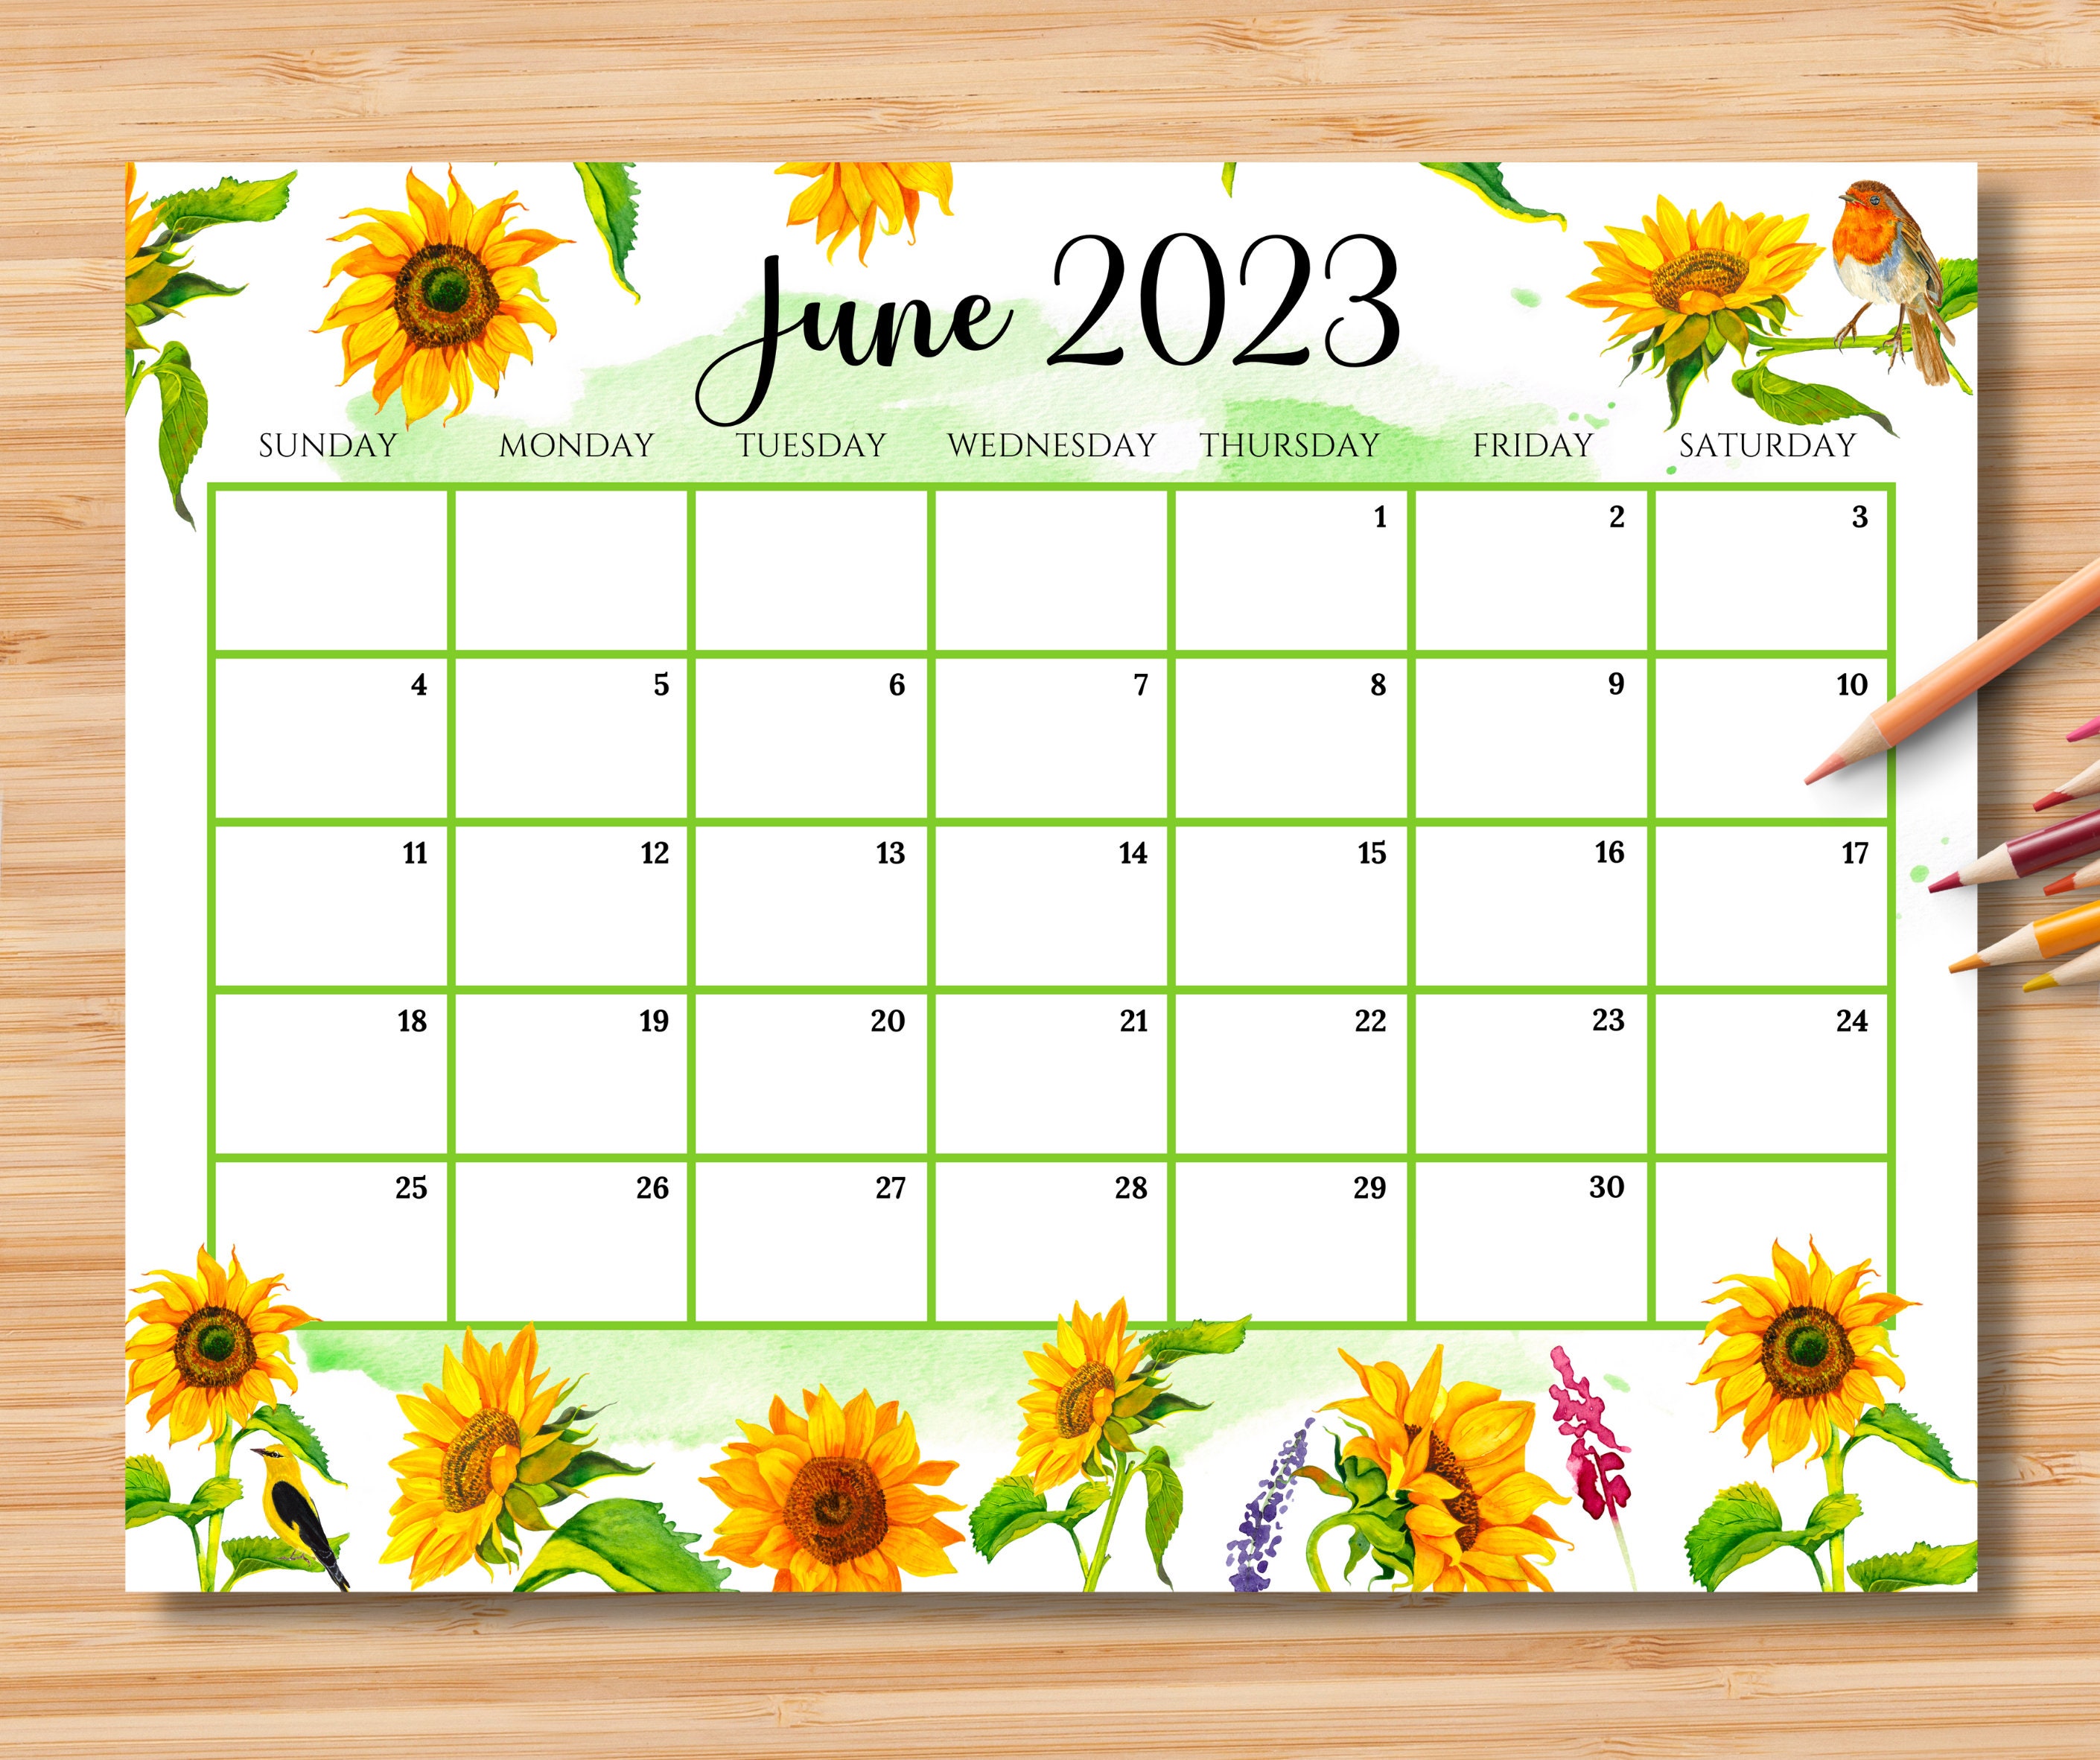 Free Printable Calendar June 2023 Uk